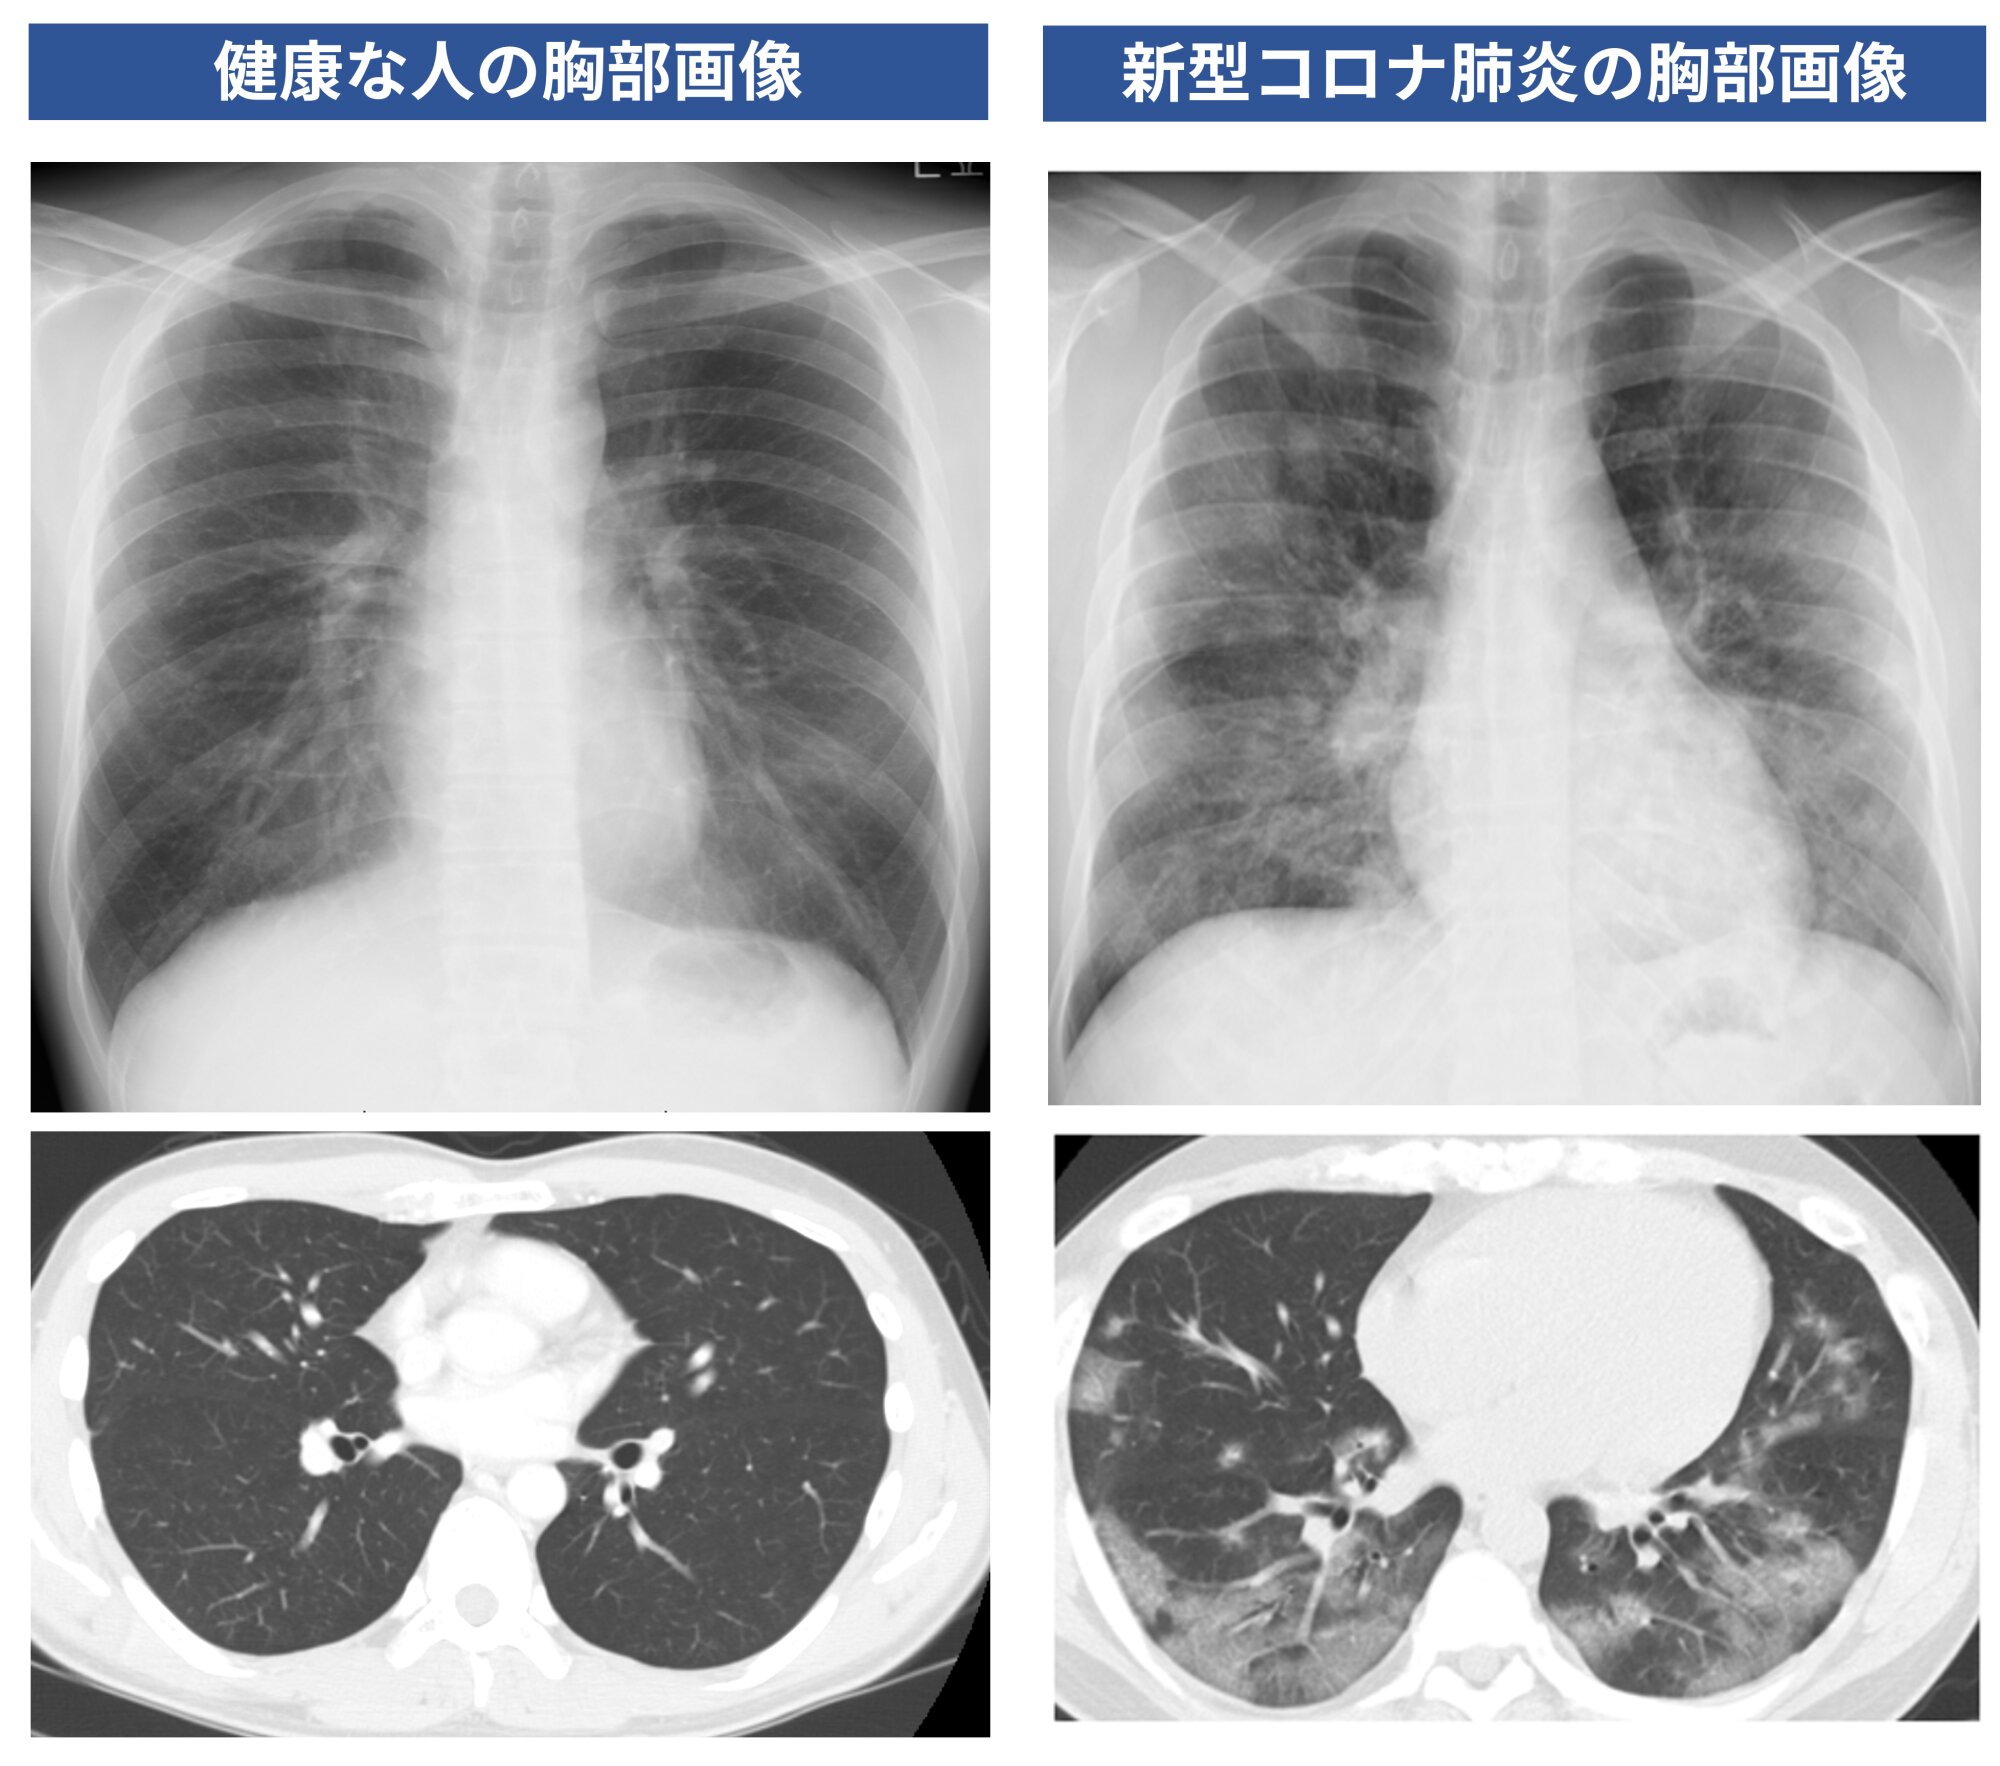 図２．健康な人（筆者自身）と新型コロナ患者（同意を得て掲載）の胸部画像検査（上：胸部単純Ｘ線写真、下：胸部単純ＣＴ写真）